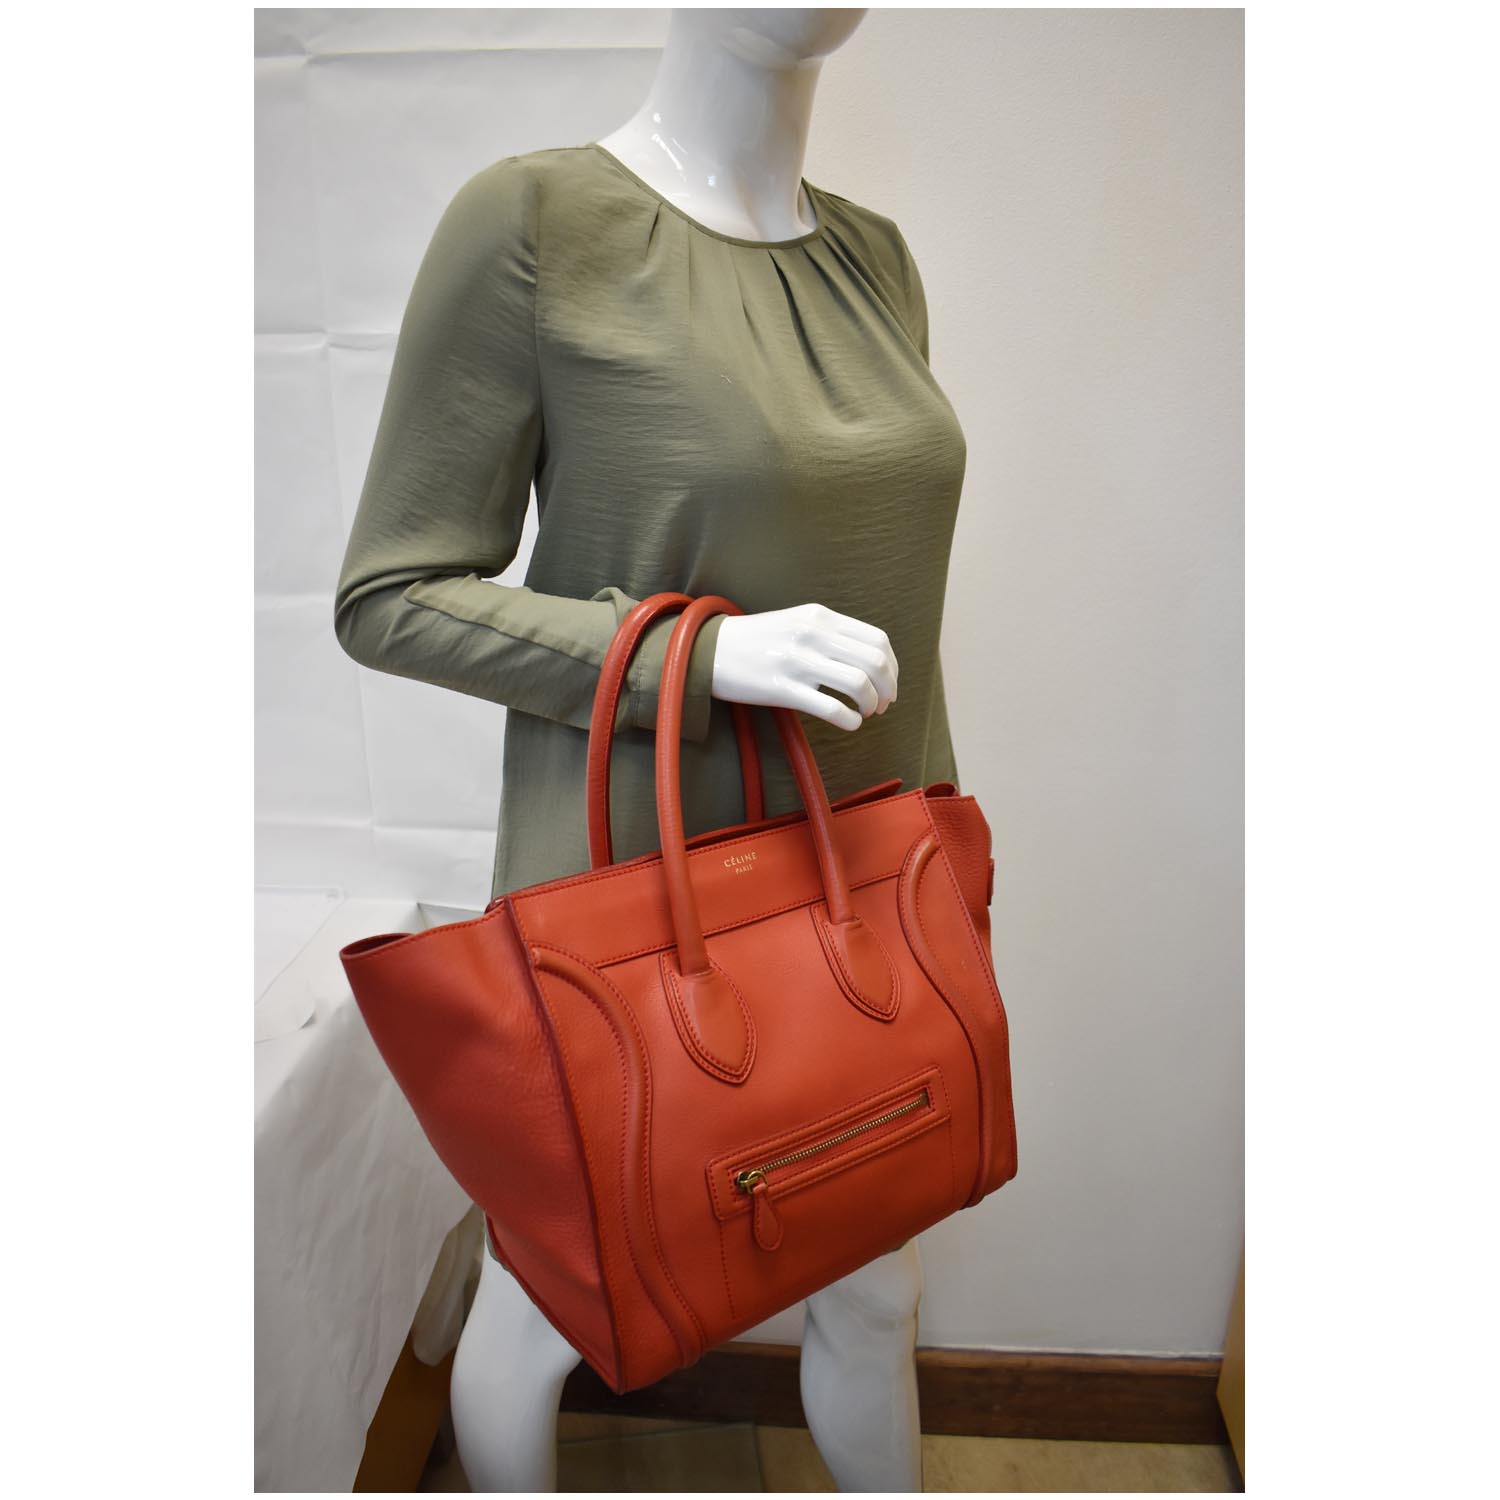 Celine Nano Luggage Leather Shoulder Bag Red For Women